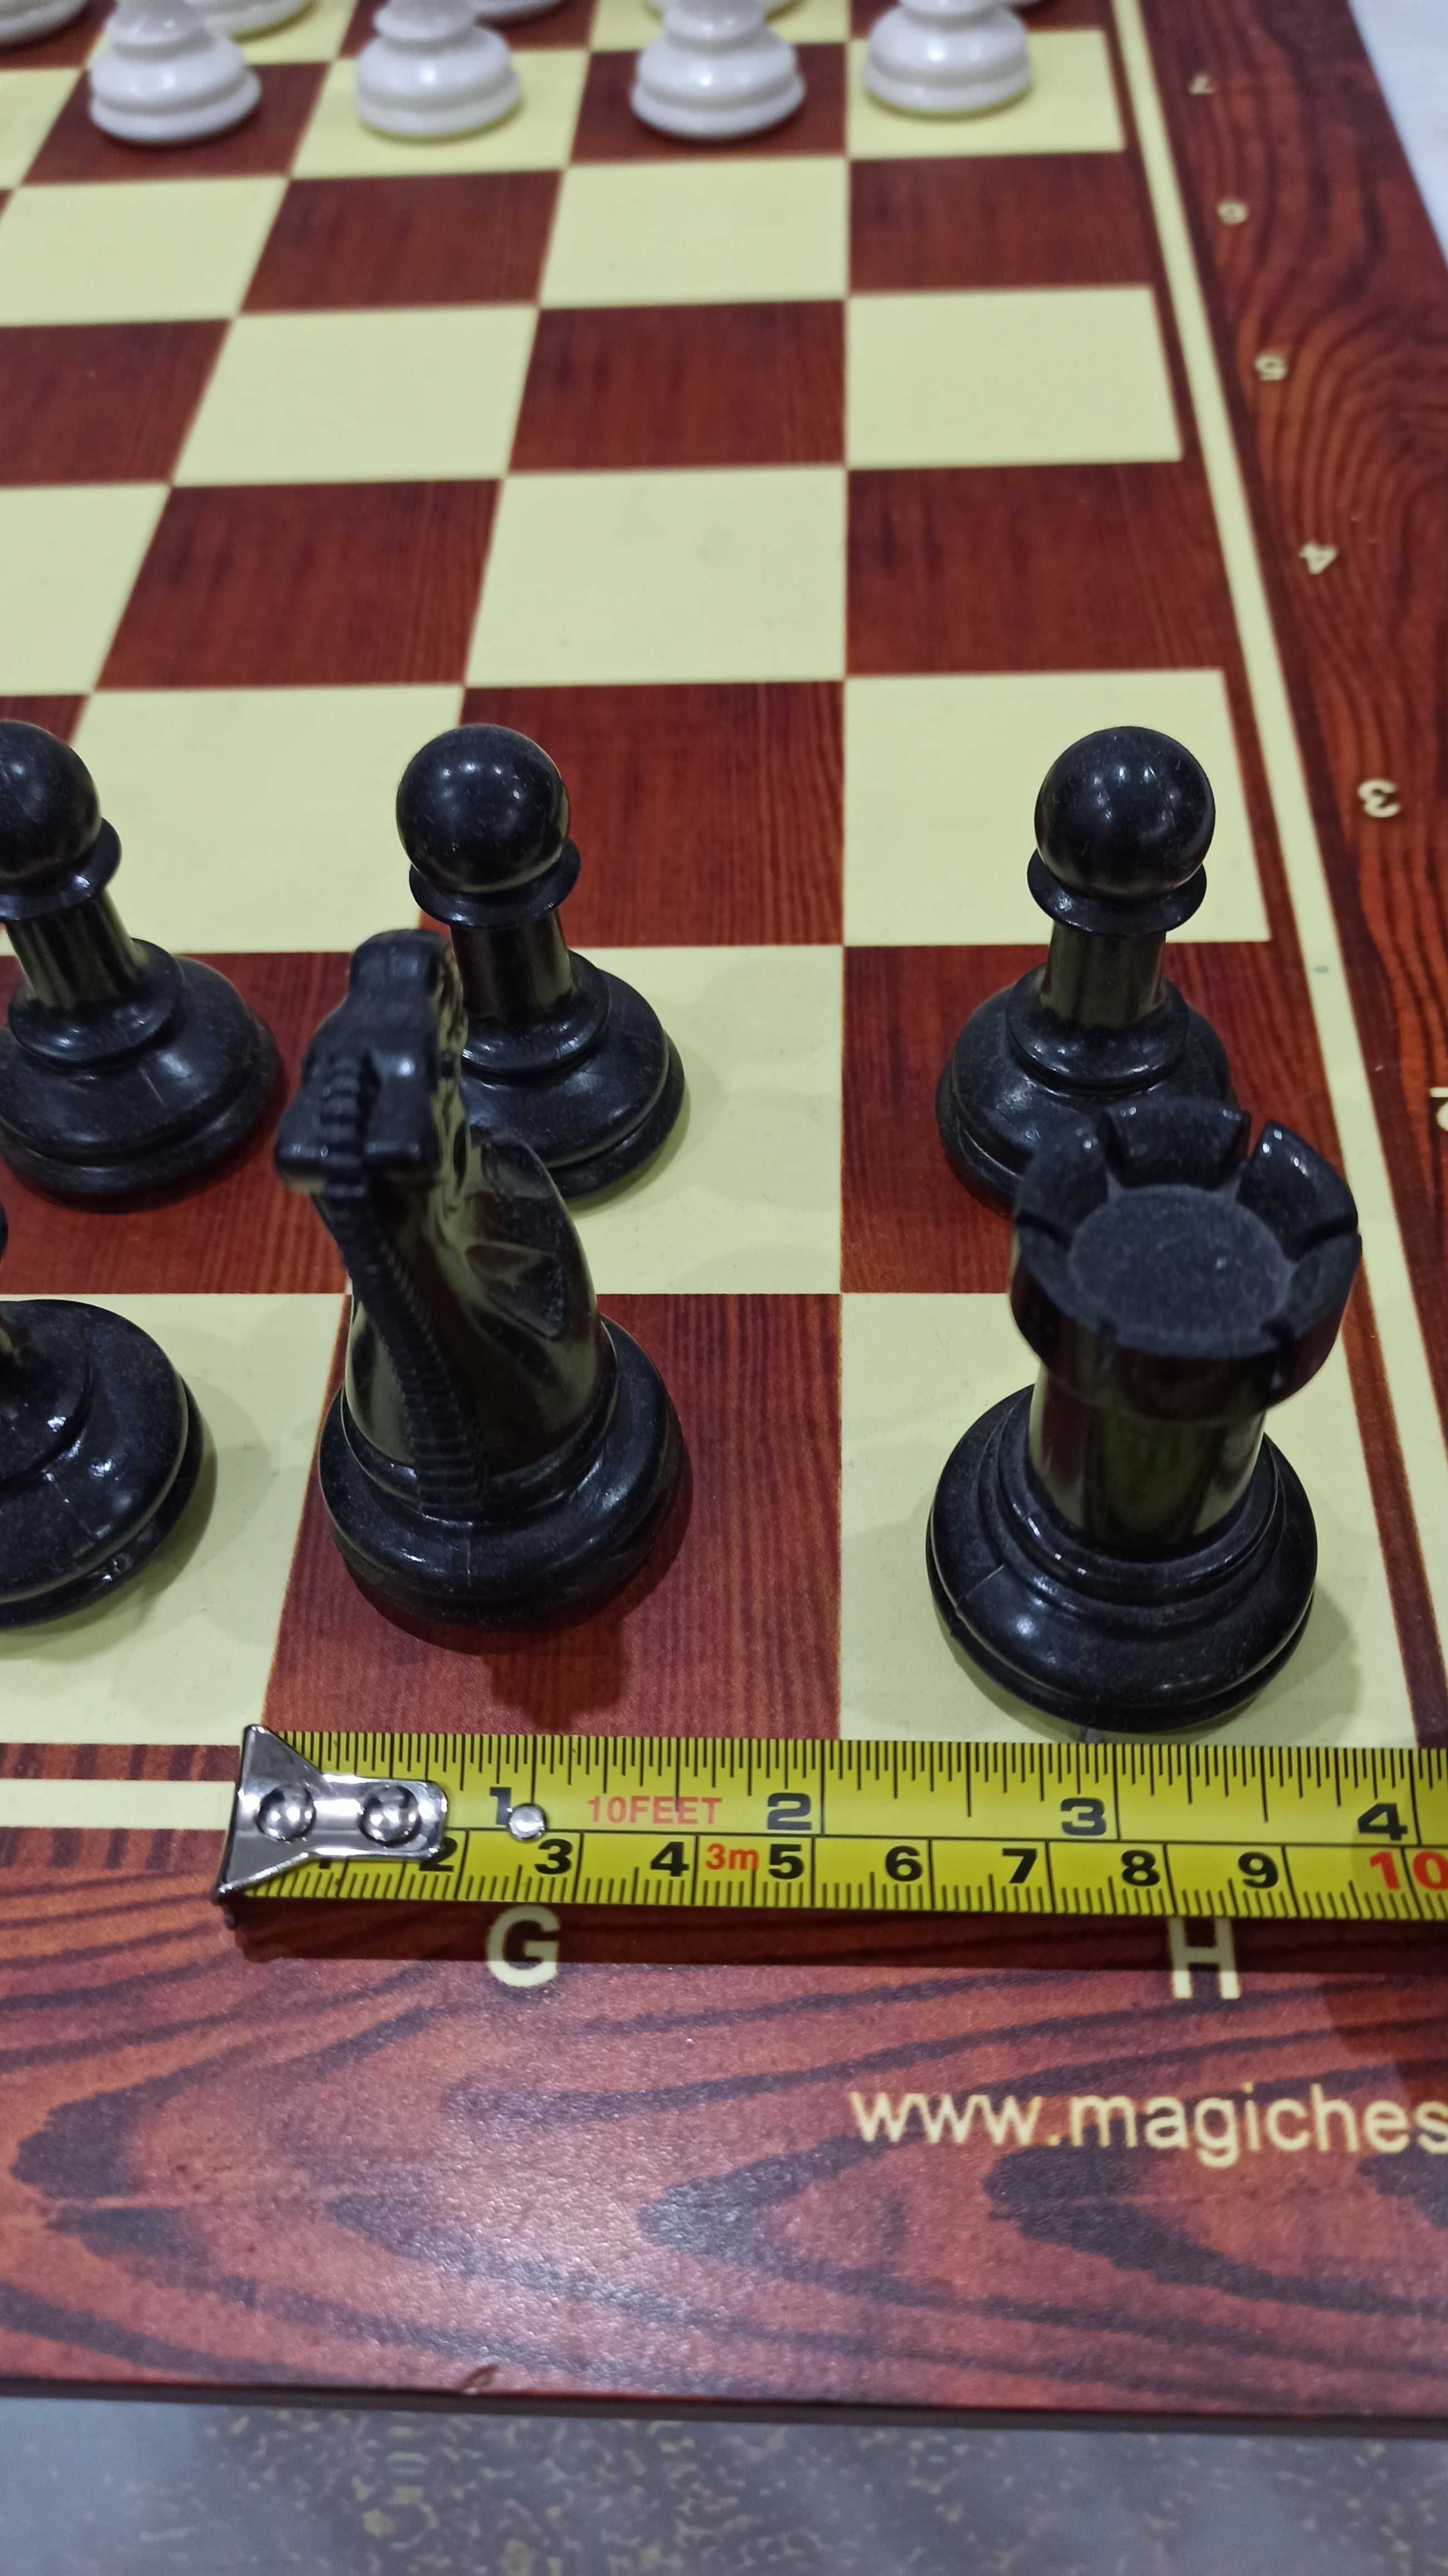 Большая шахматная доска и набор больших фигур